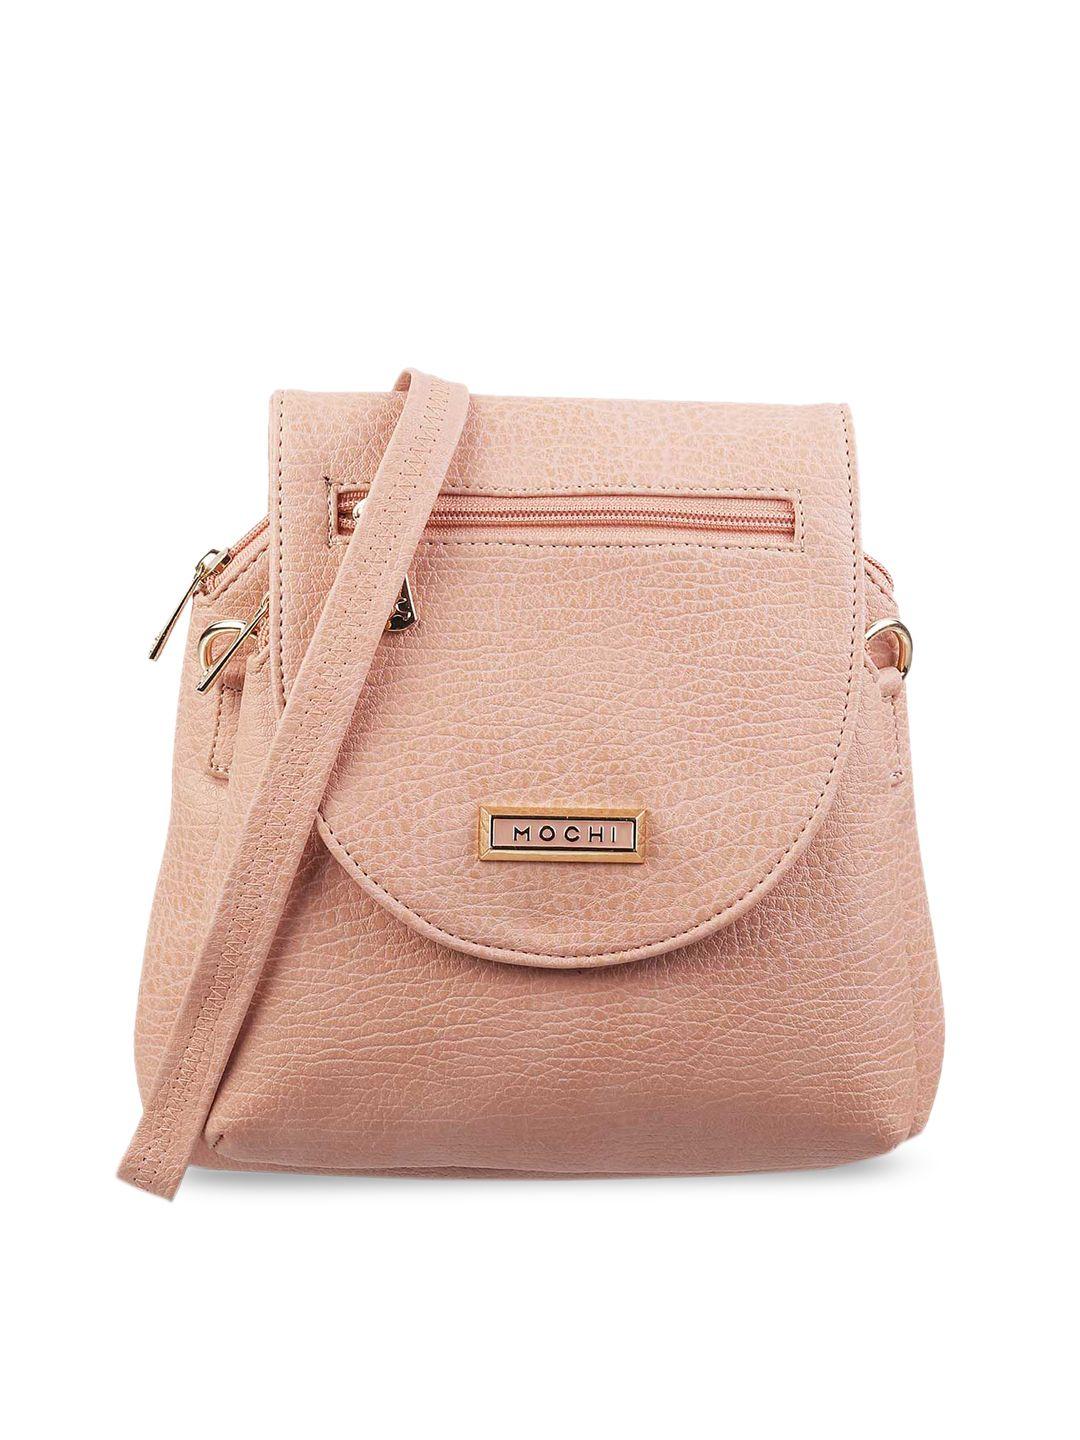 mochi pink  textured structured sling bag